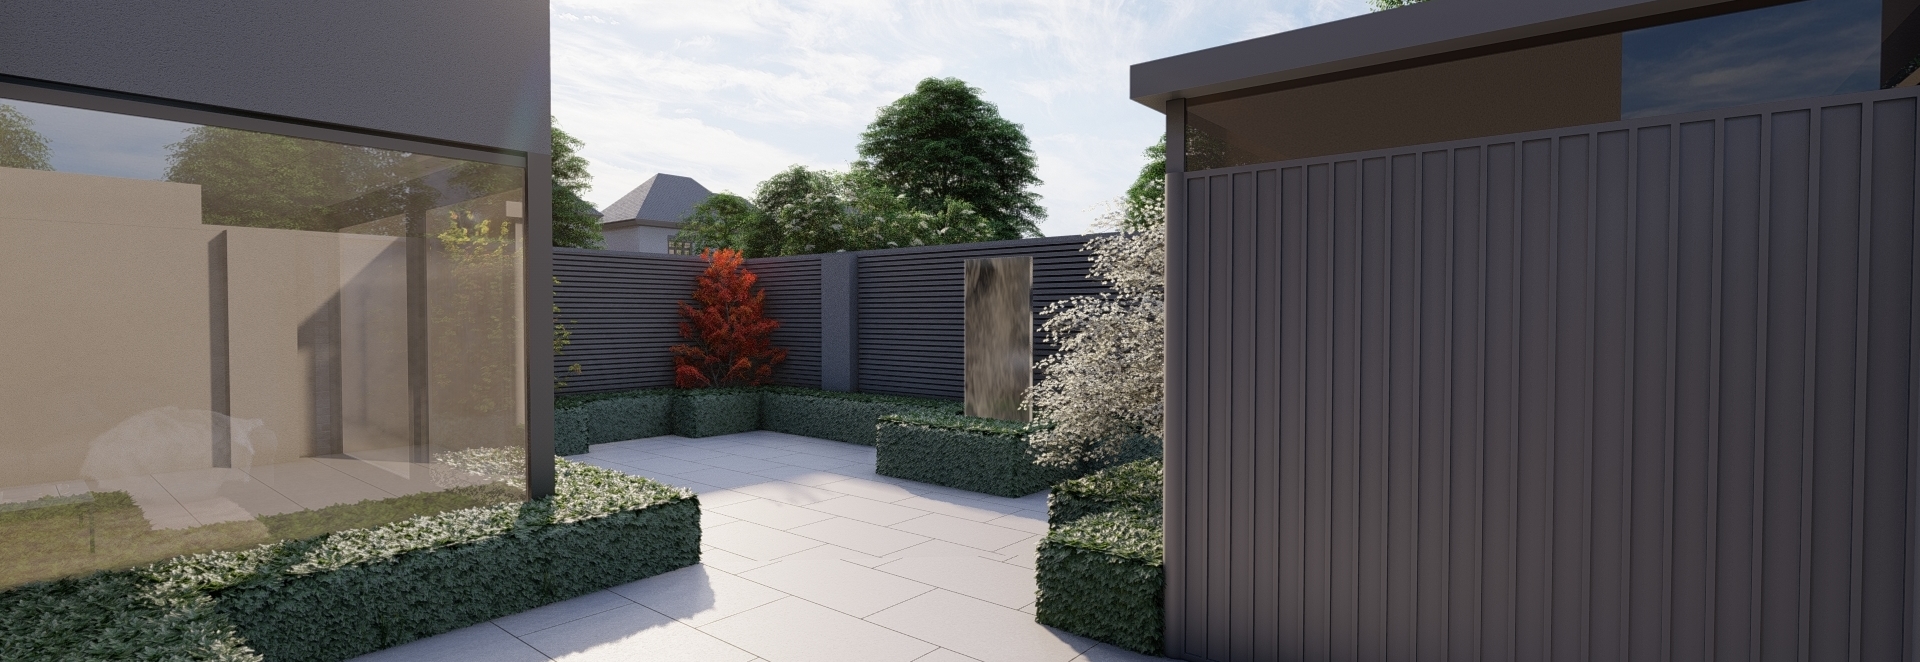 Small Garden Design | Foxrock , Dublin 18| Owen Chubb